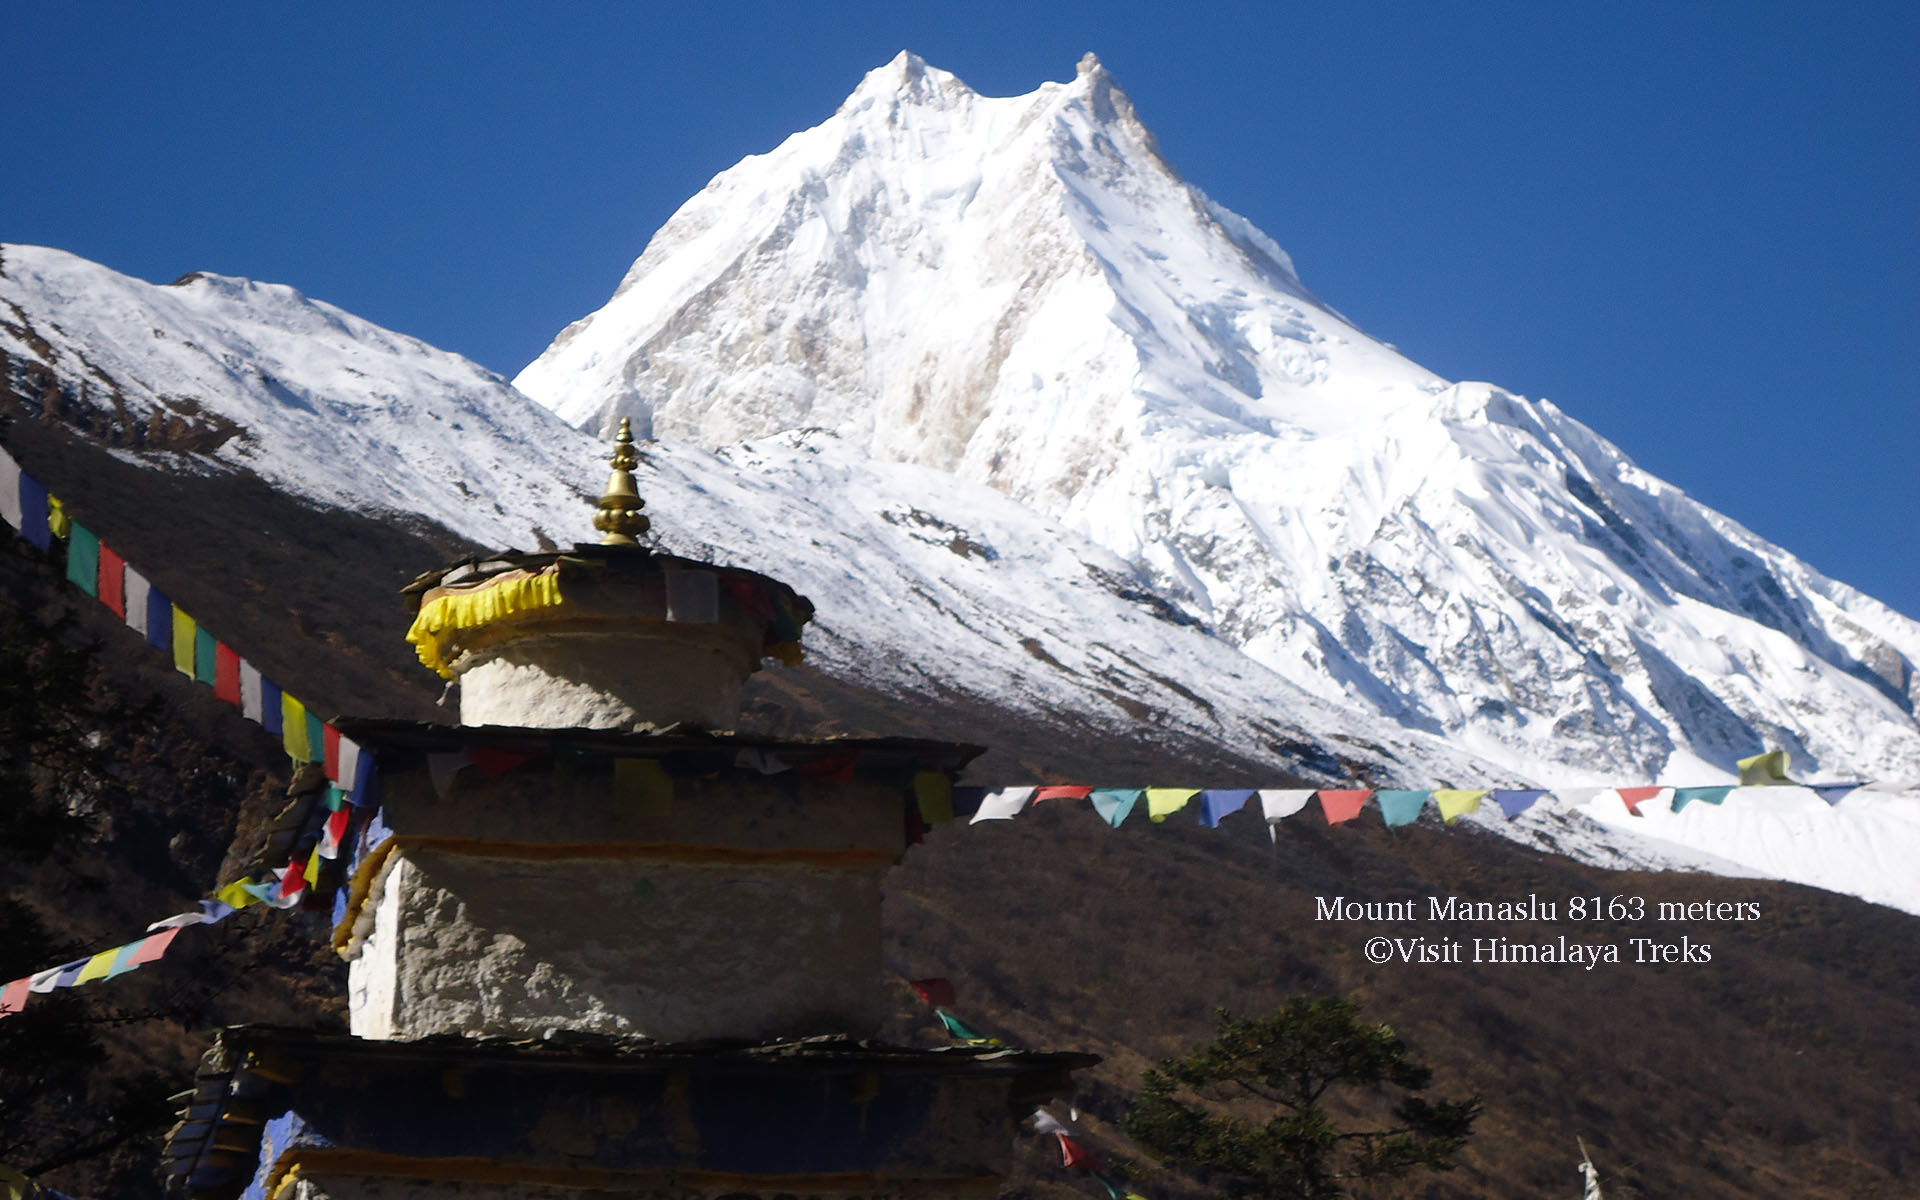 Mount Manaslu and Buddhist Stupa 